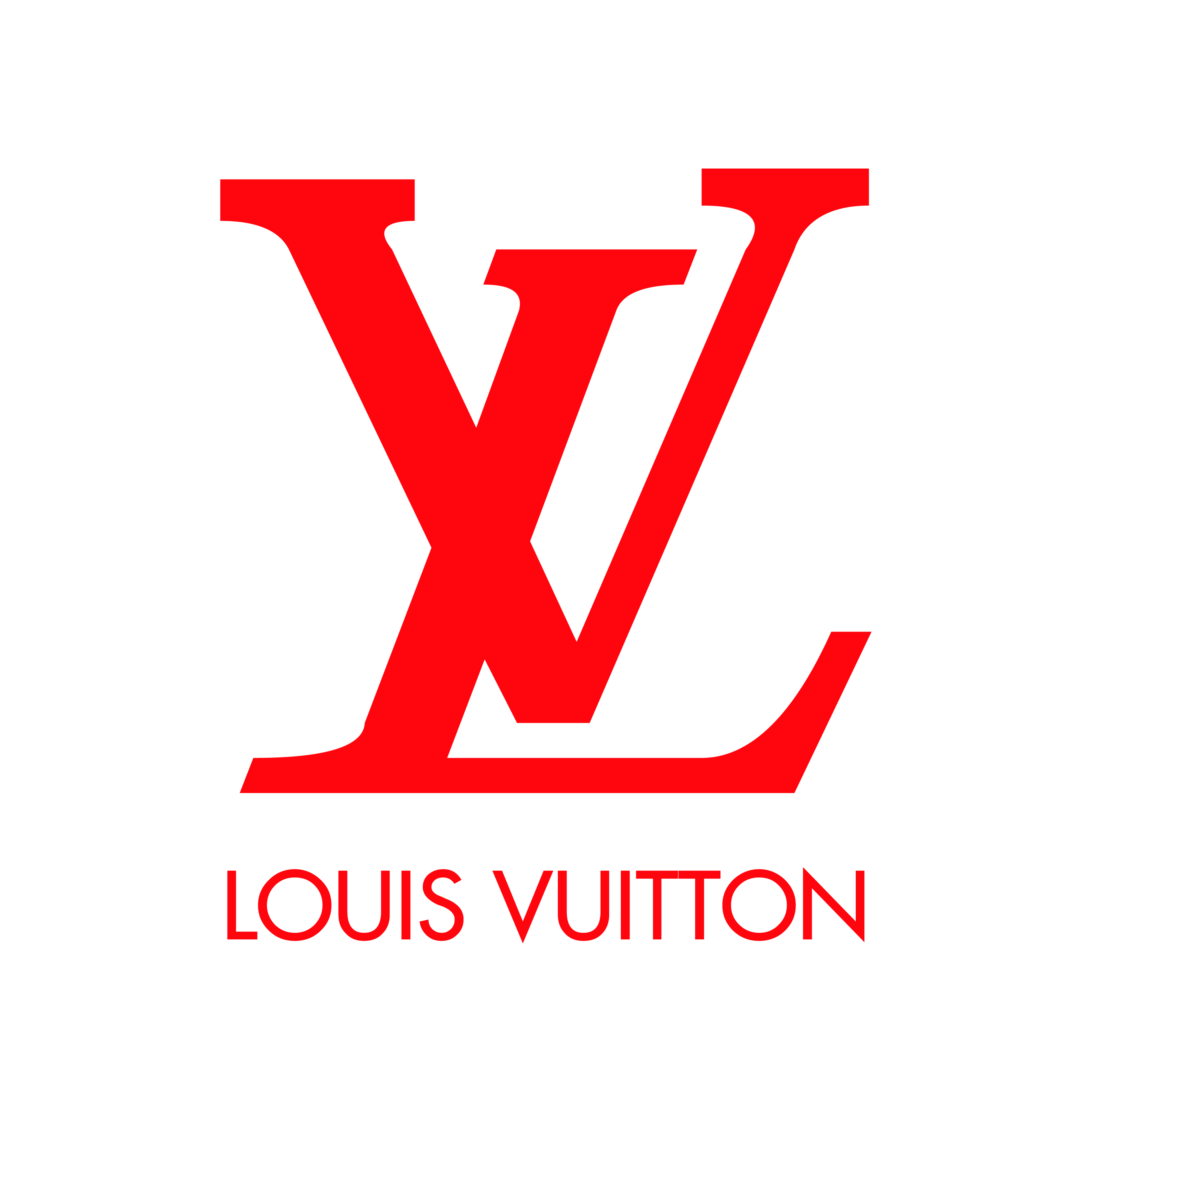 Louis Vuitton Svg